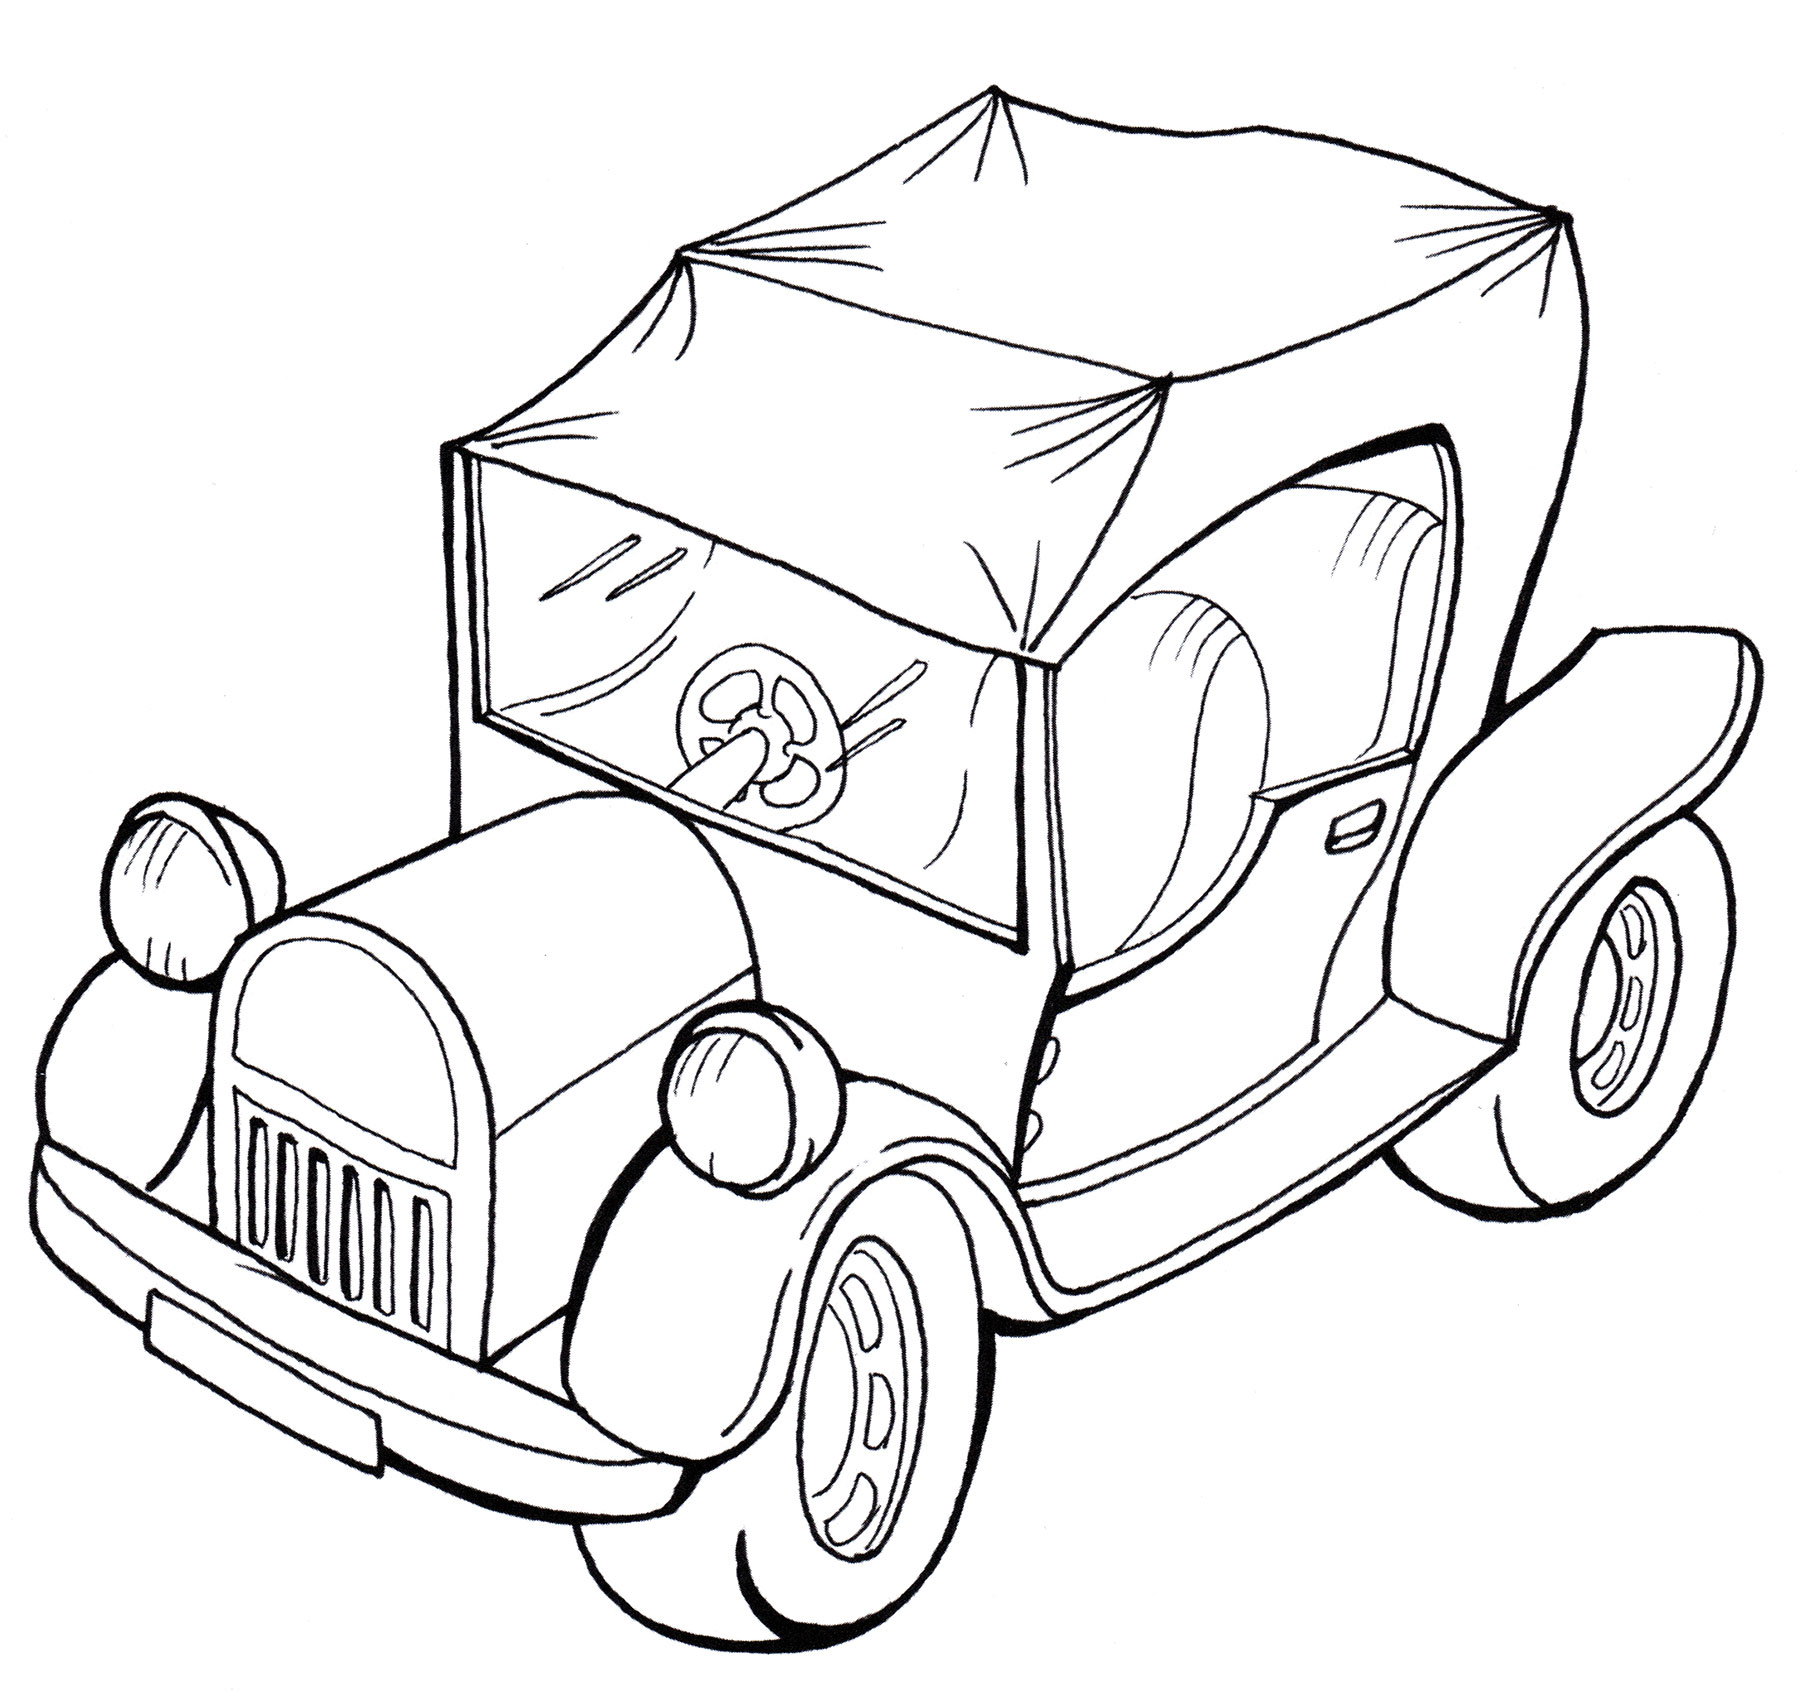 Винтажный автомобиль кабриолет без крыши эскиз книжка-раскраска черно-белый рисунок монохромный